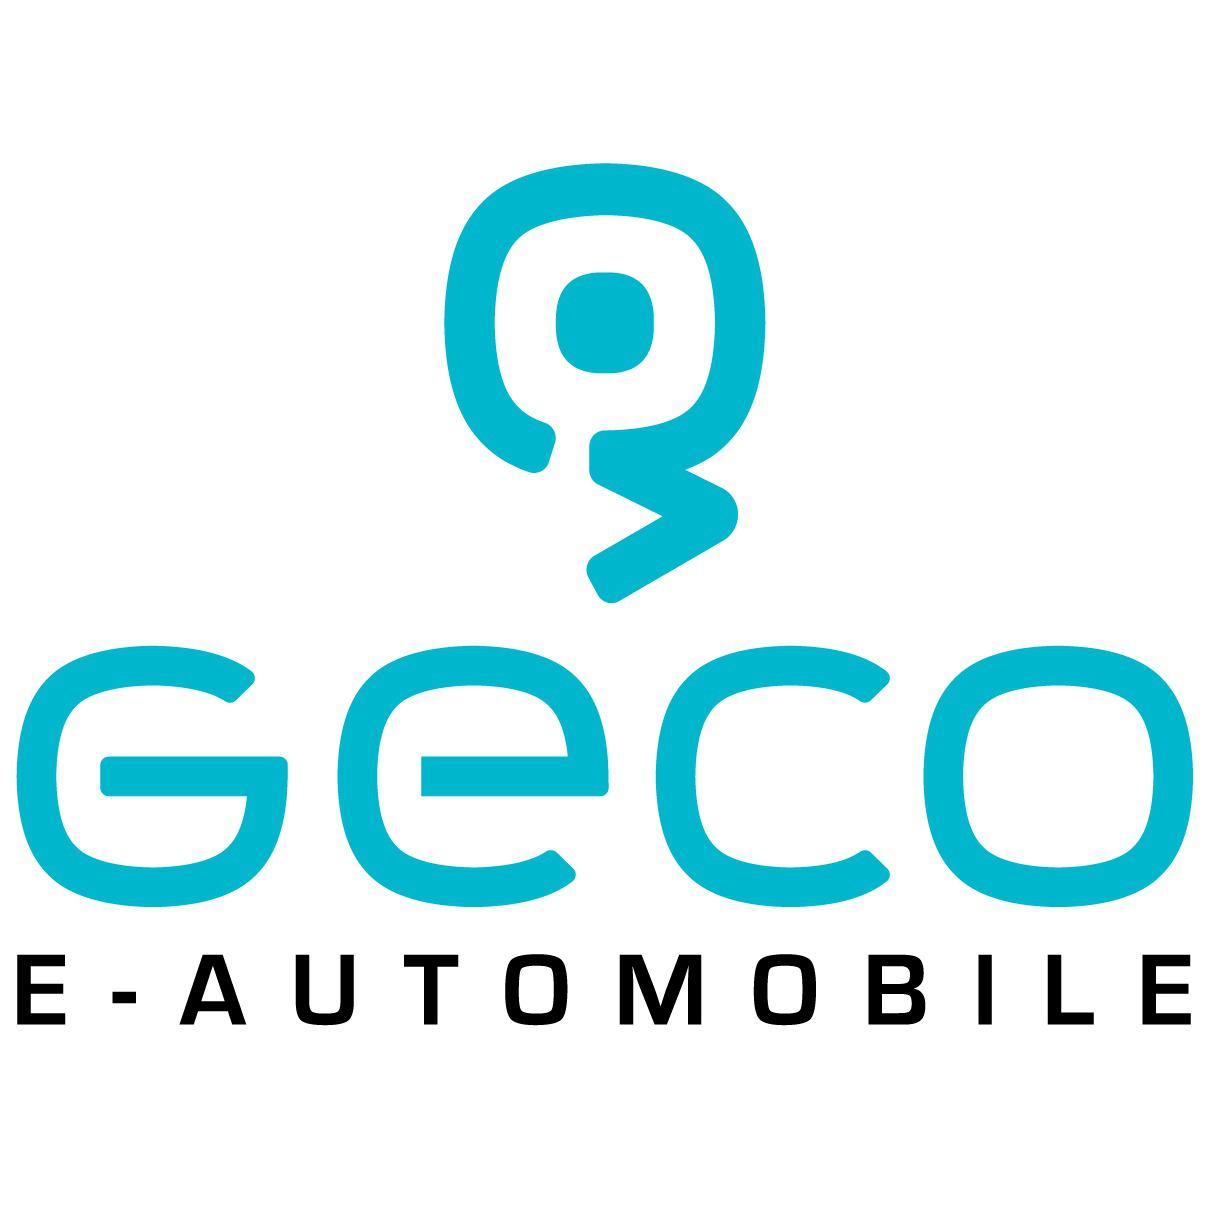 Geco E-Automobile in Gelsenkirchen